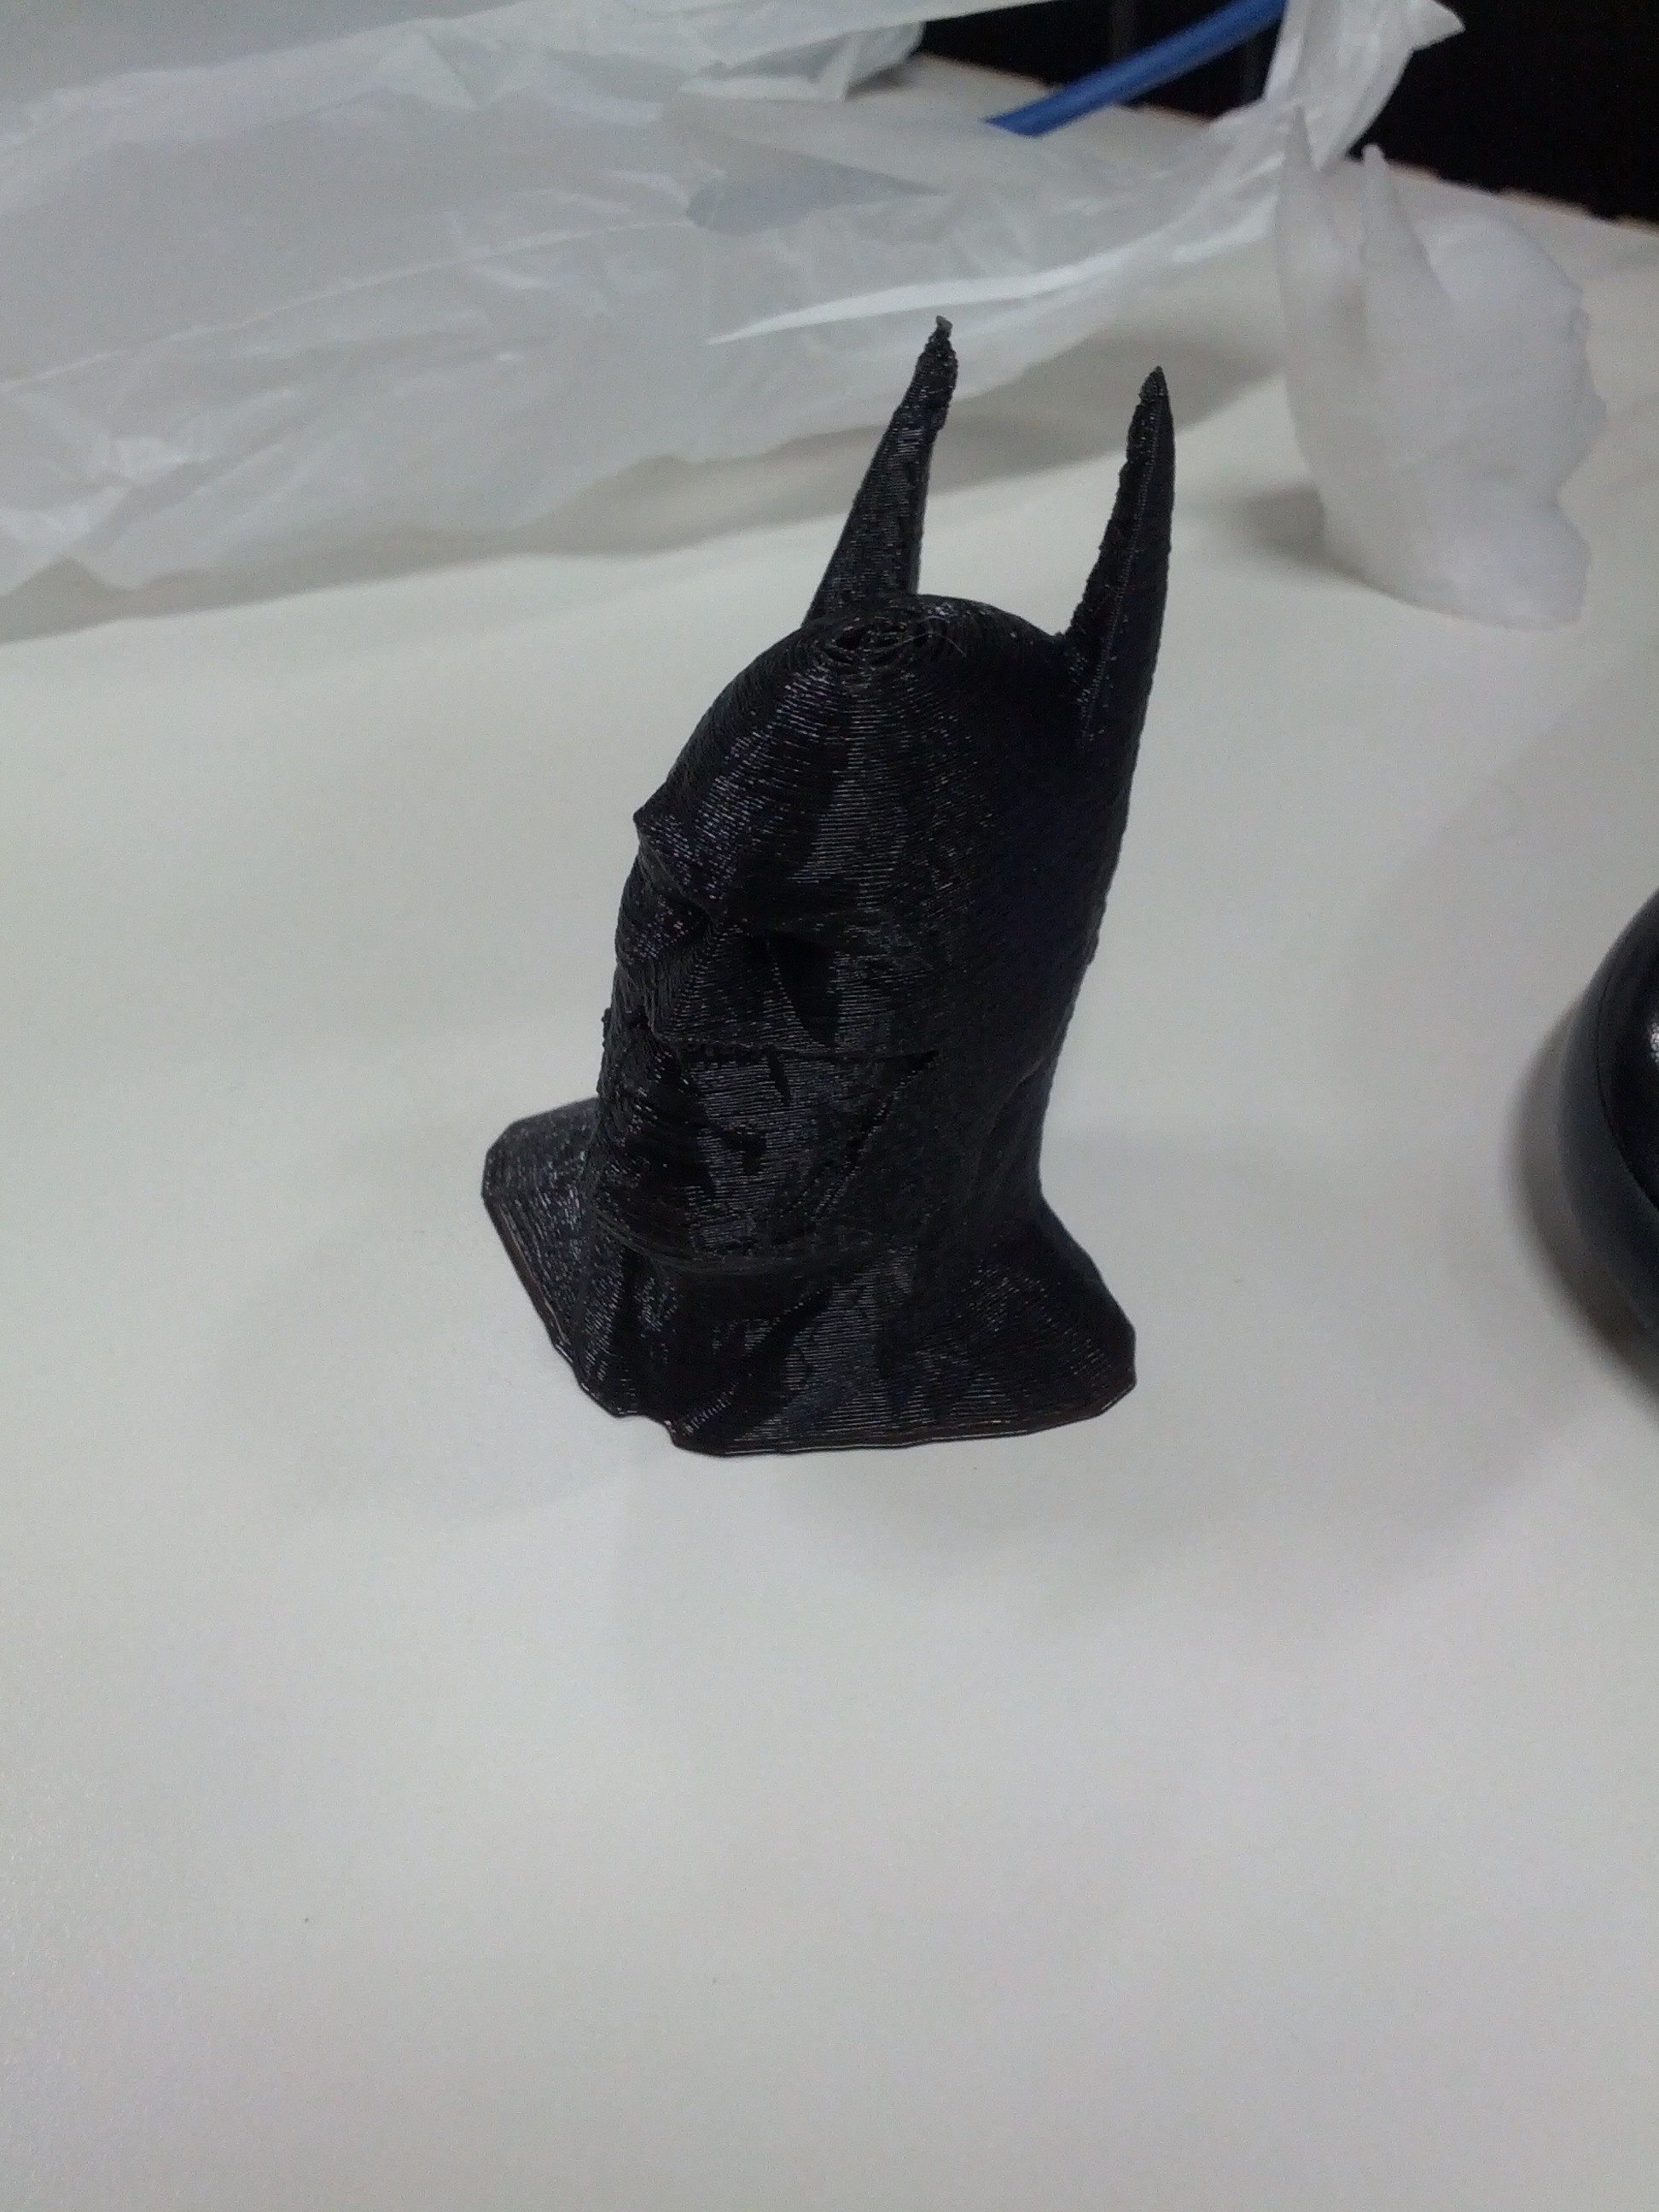 Montagem: O Batman impresso sem intervenção; Melhorias: Usar ducto de